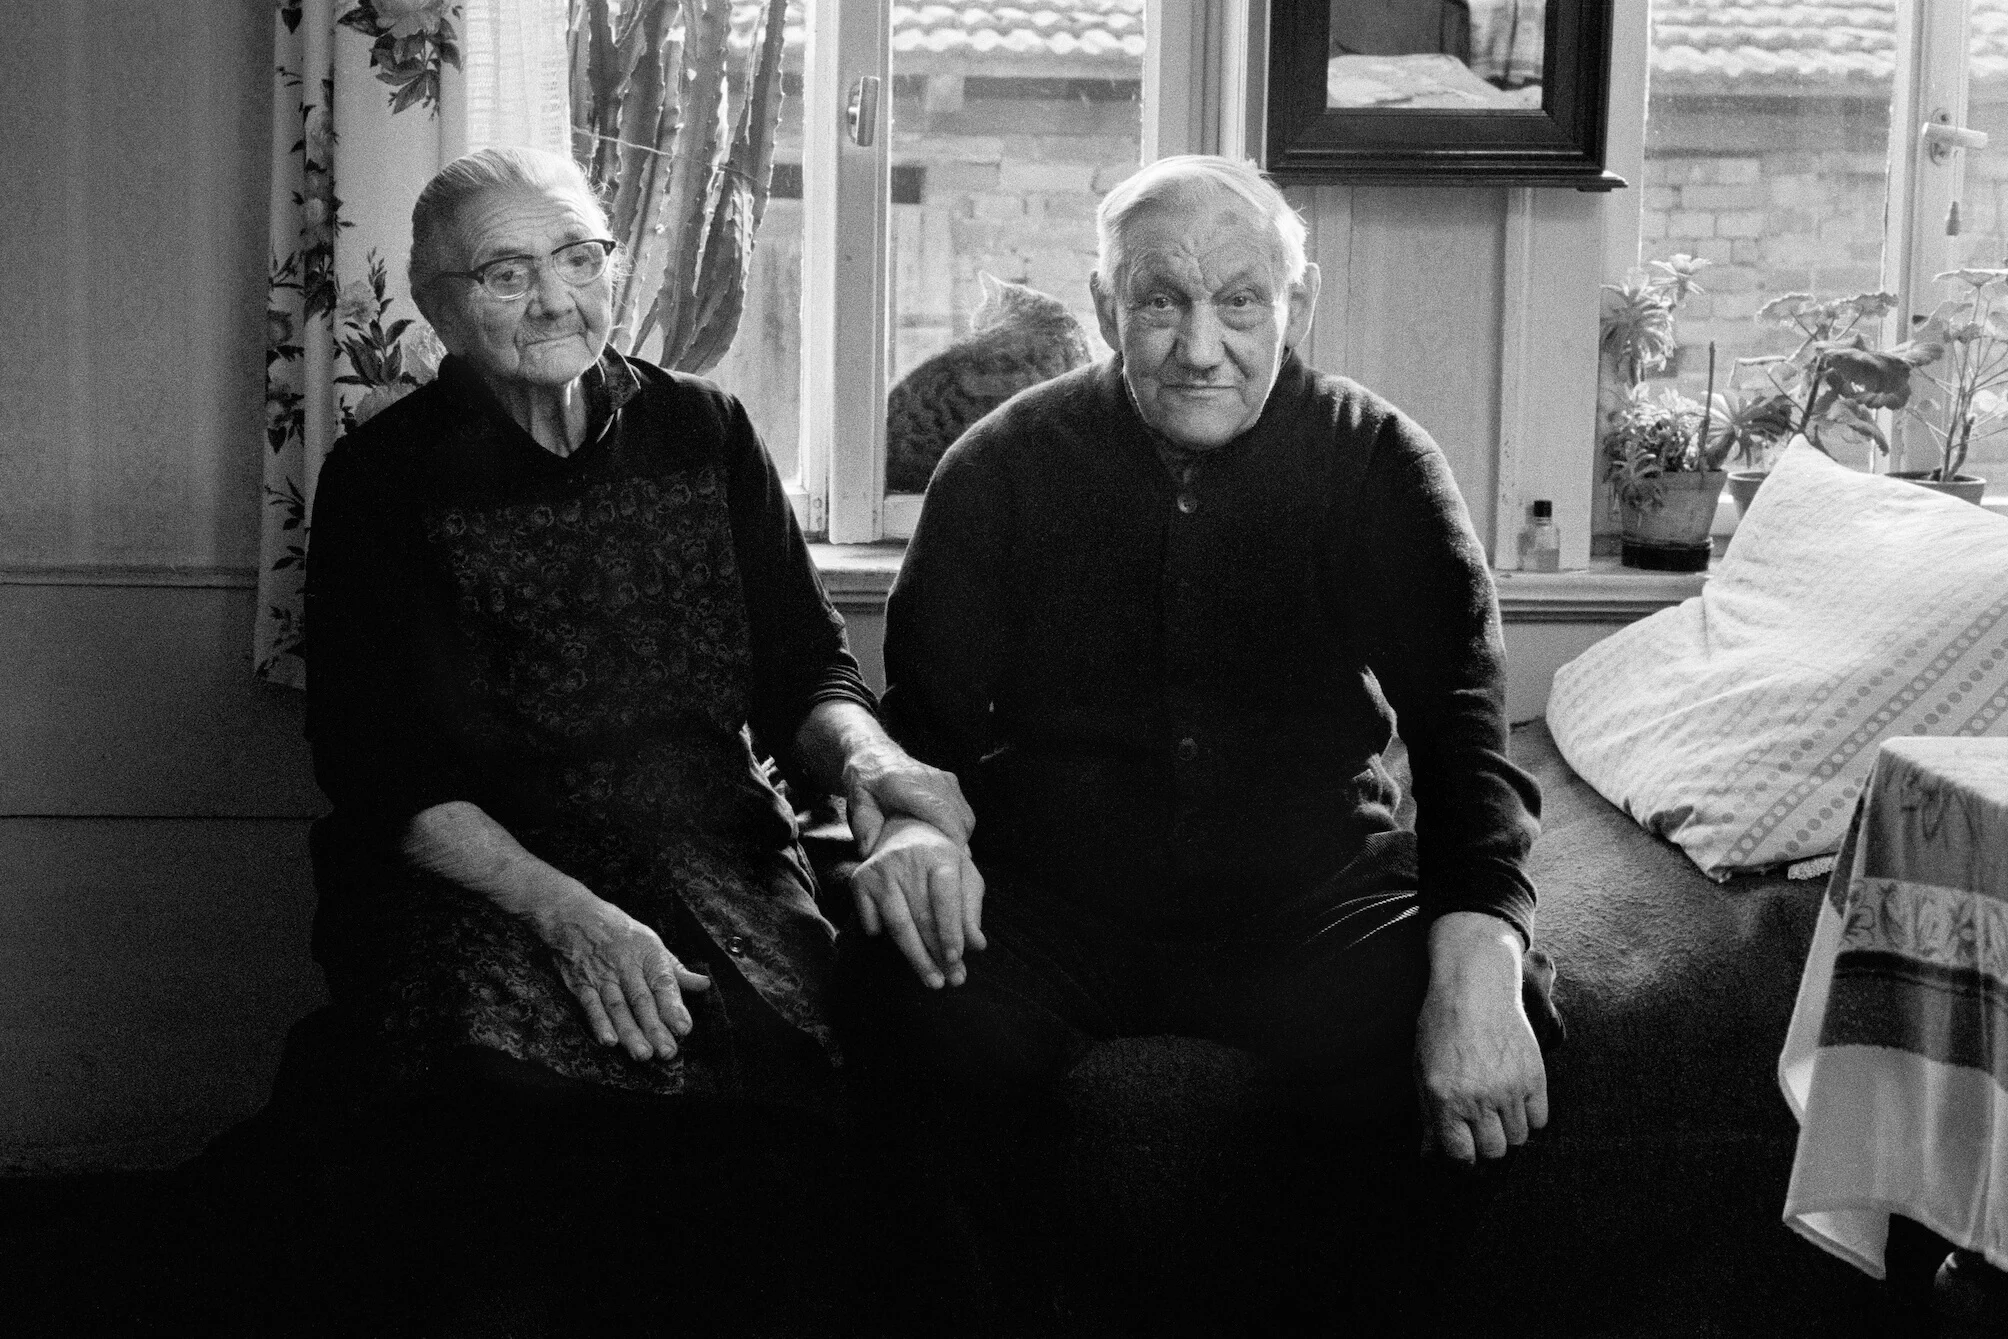 Ute Mahler, Sundhausen, the K. family (series Living Together), 1974